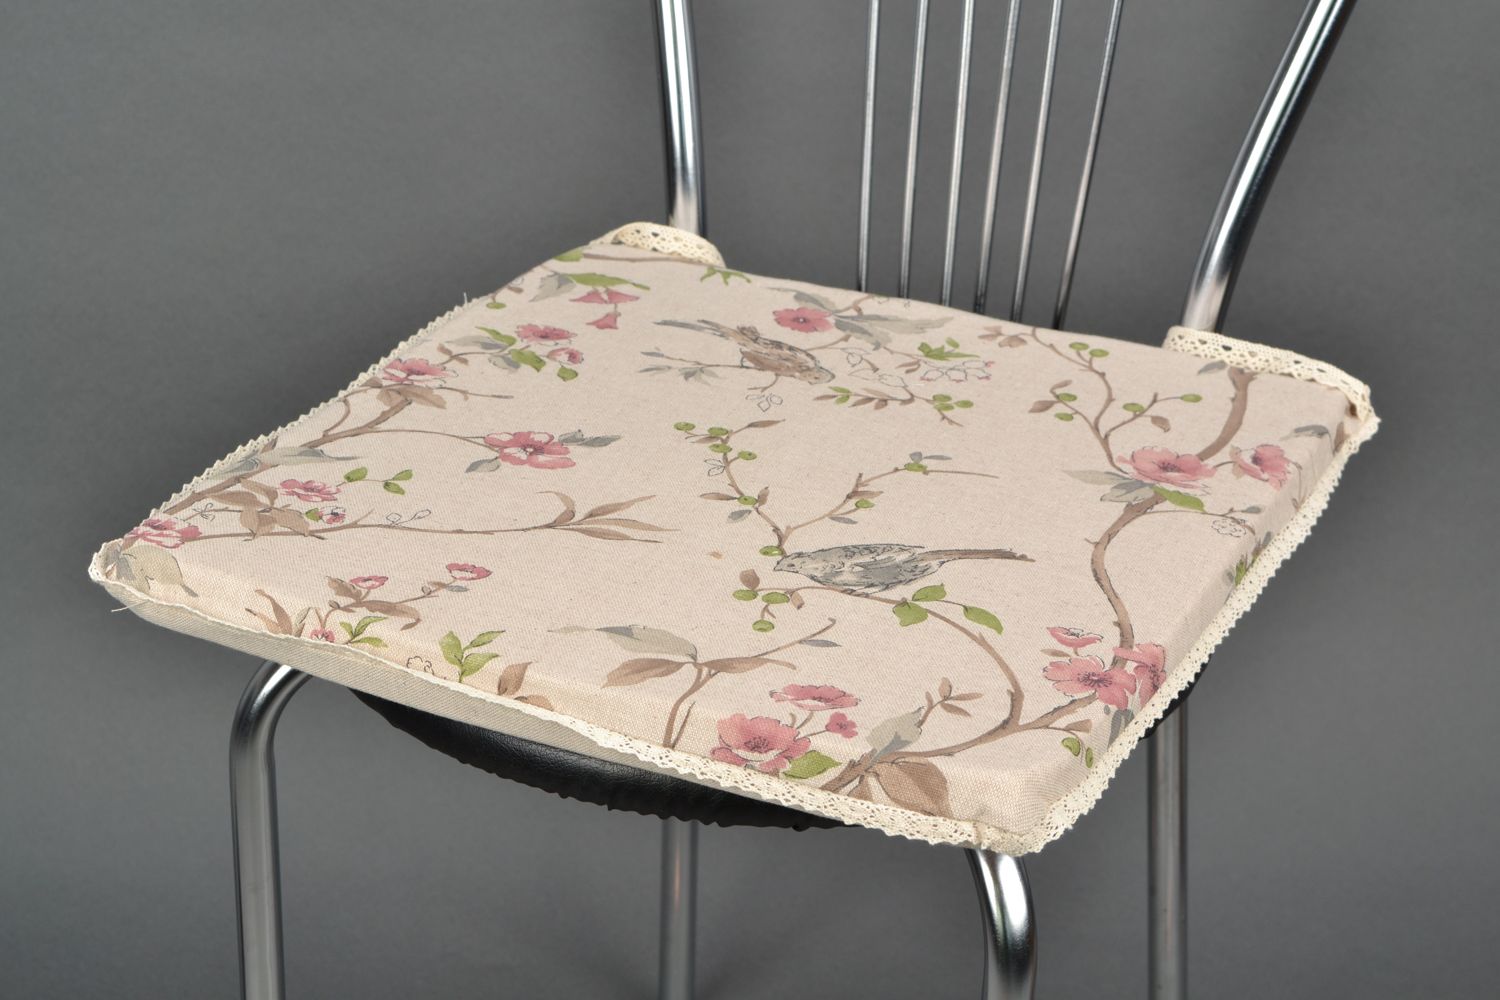 Декоративная подушка на кухонный стул из хлопка и полиамида с цветочным принтом фото 1